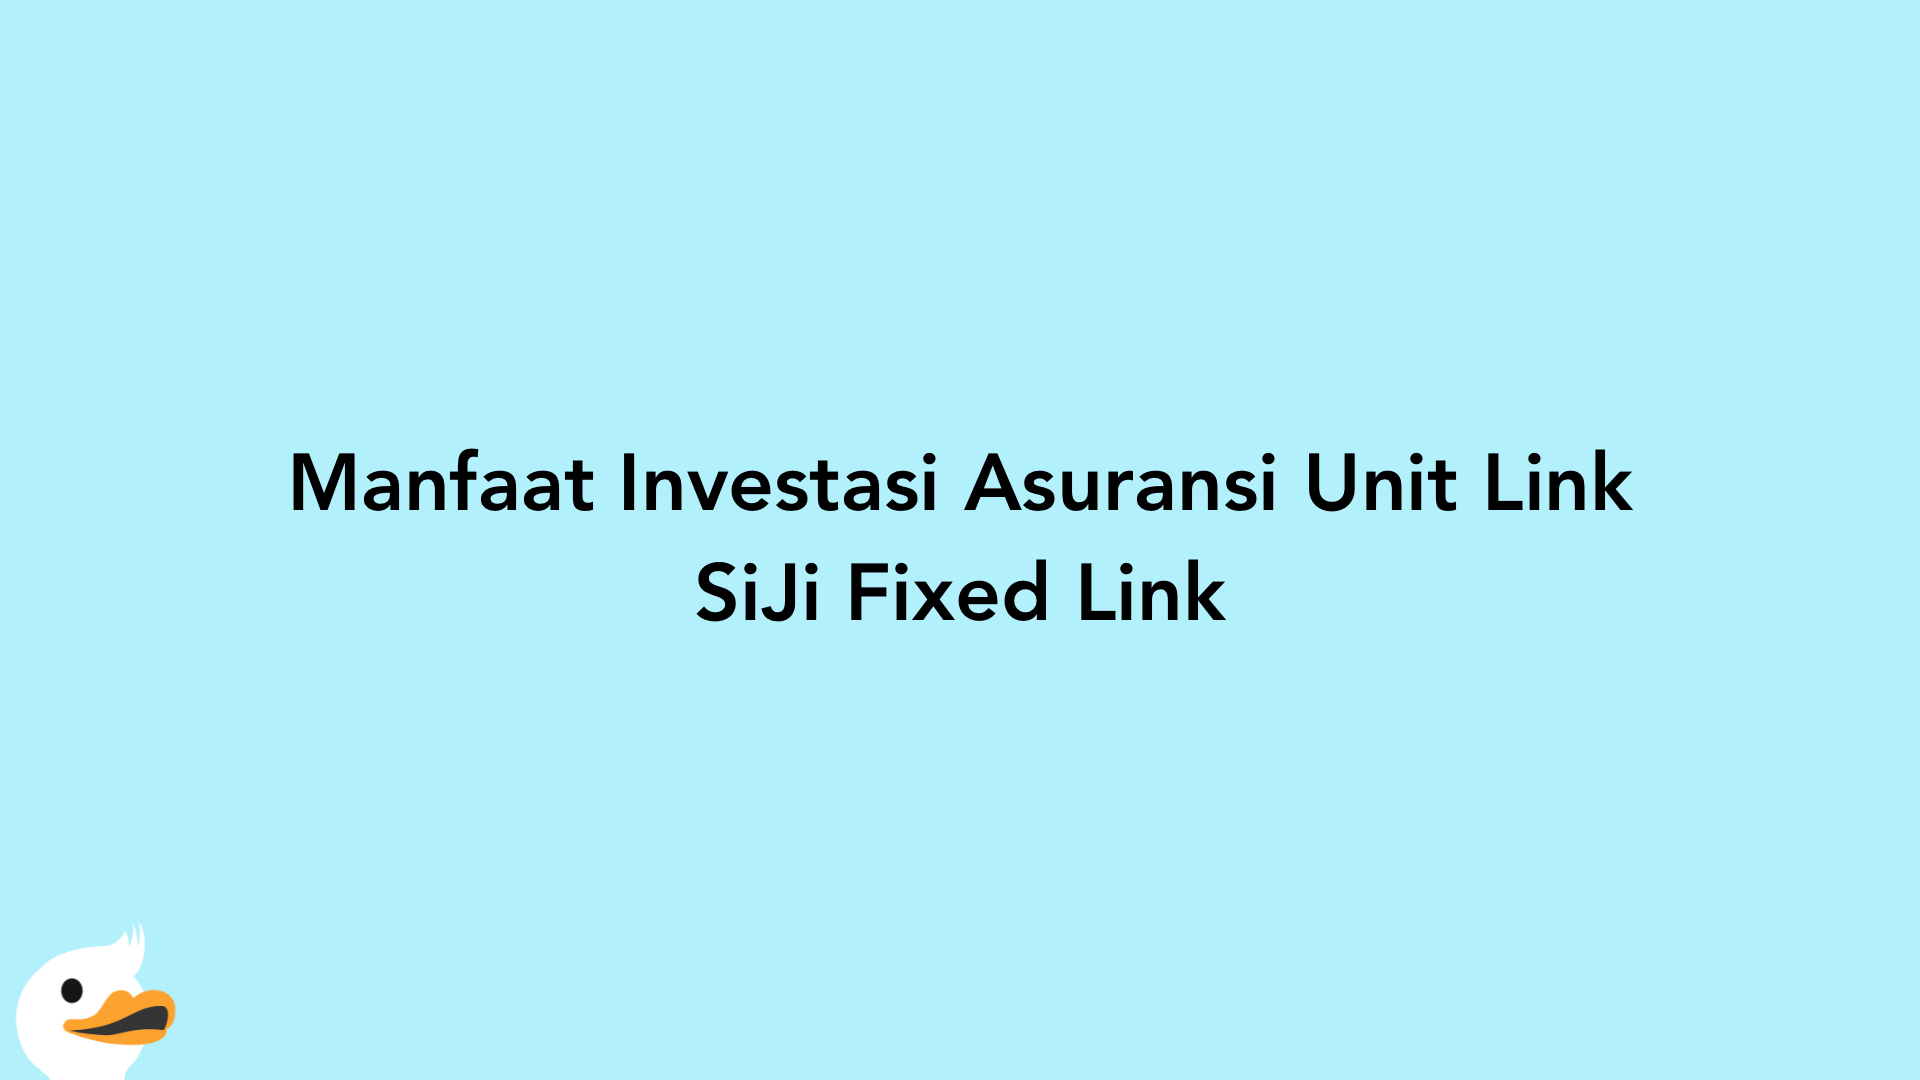 Manfaat Investasi Asuransi Unit Link SiJi Fixed Link